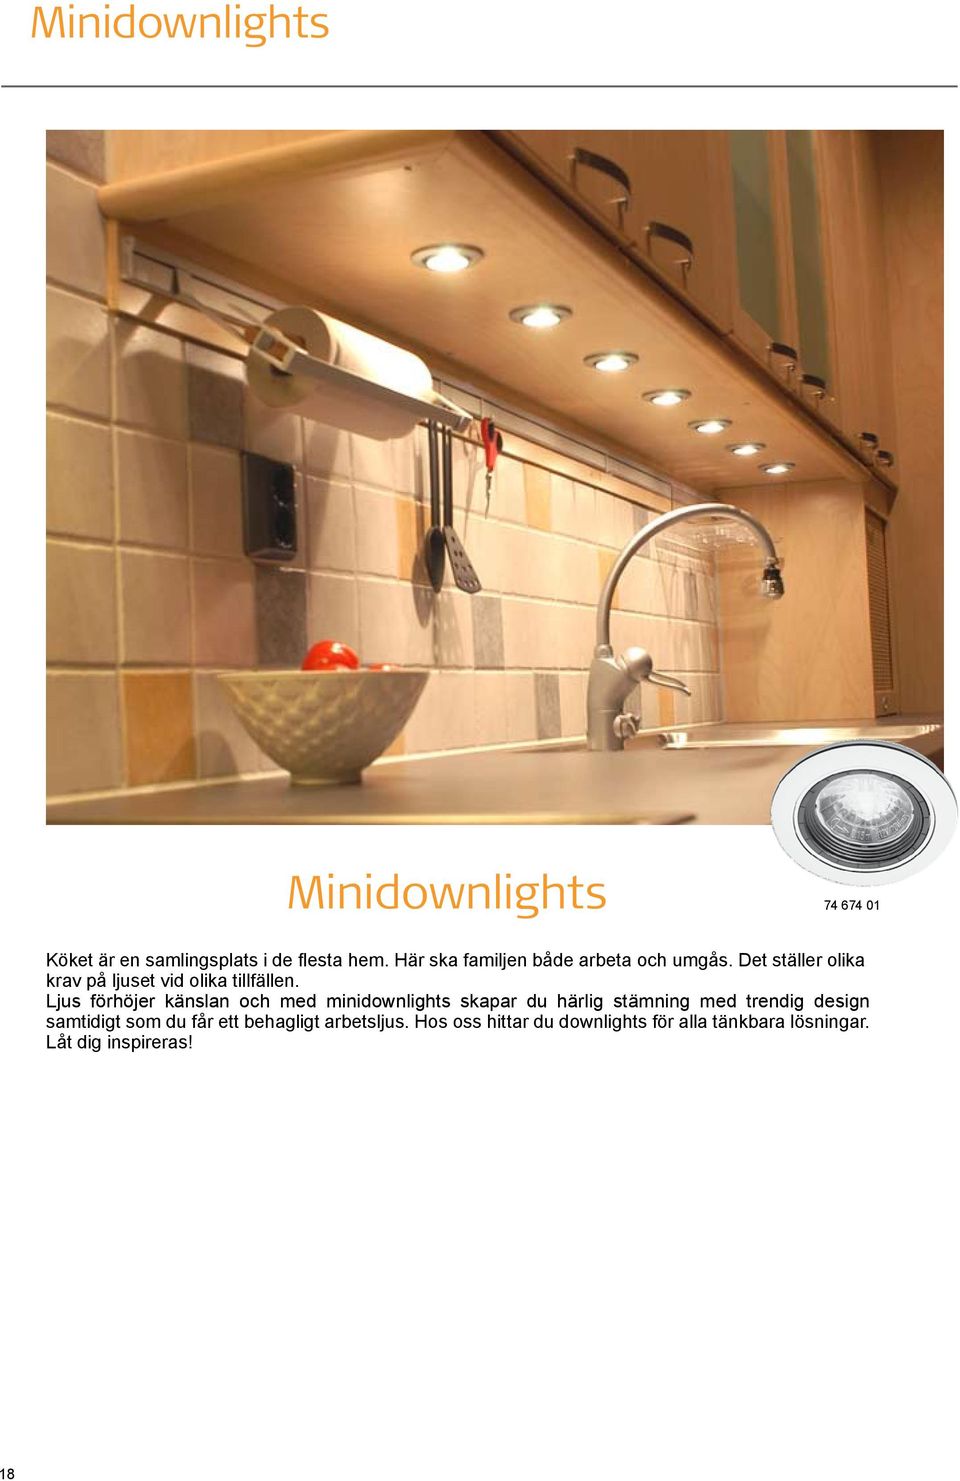 Ljus förhöjer känslan och med minidownlights skapar du härlig stämning med trendig design